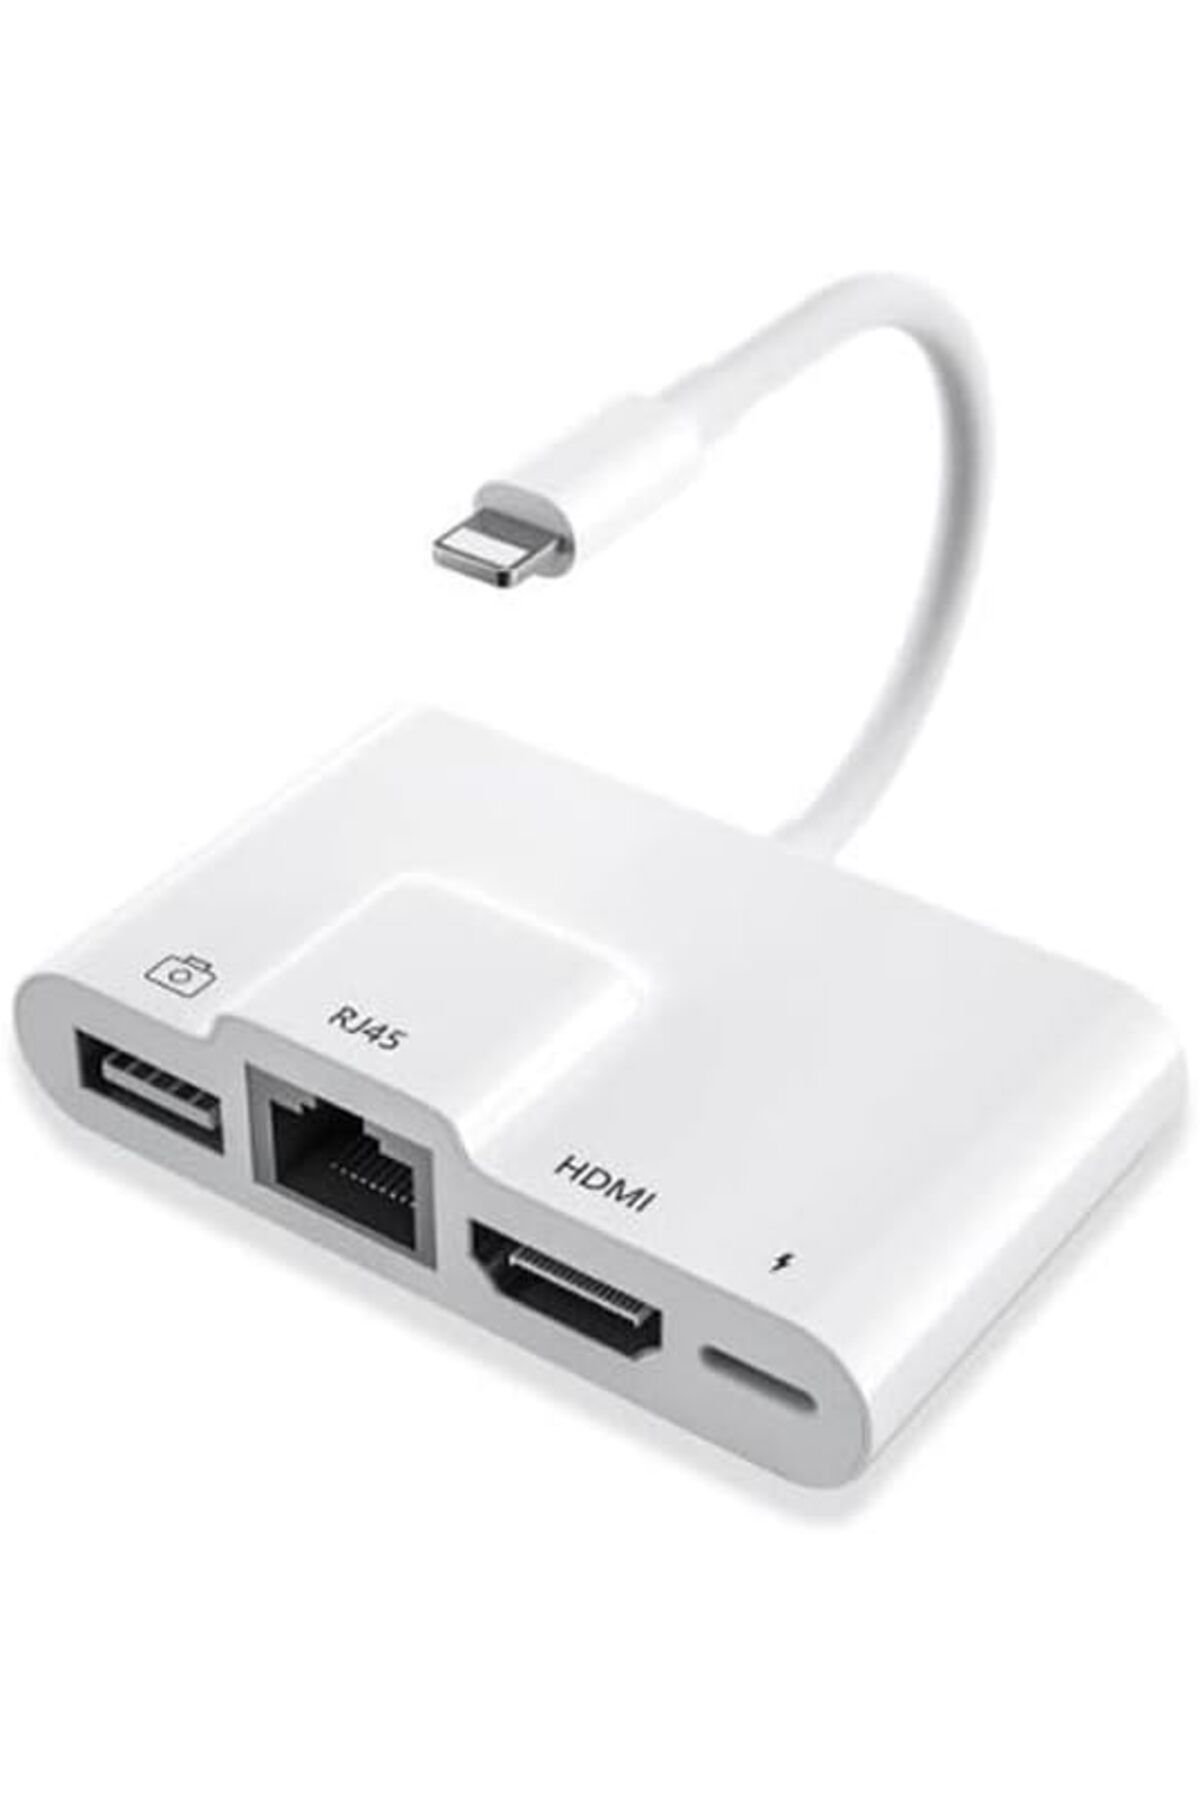 TezMax Apple iPad ve iPhone İçin Lightning 3 in1 Hdmi Rj45 Ethernet Ve Otg Dönüştürücü Digital AV Adaptörü